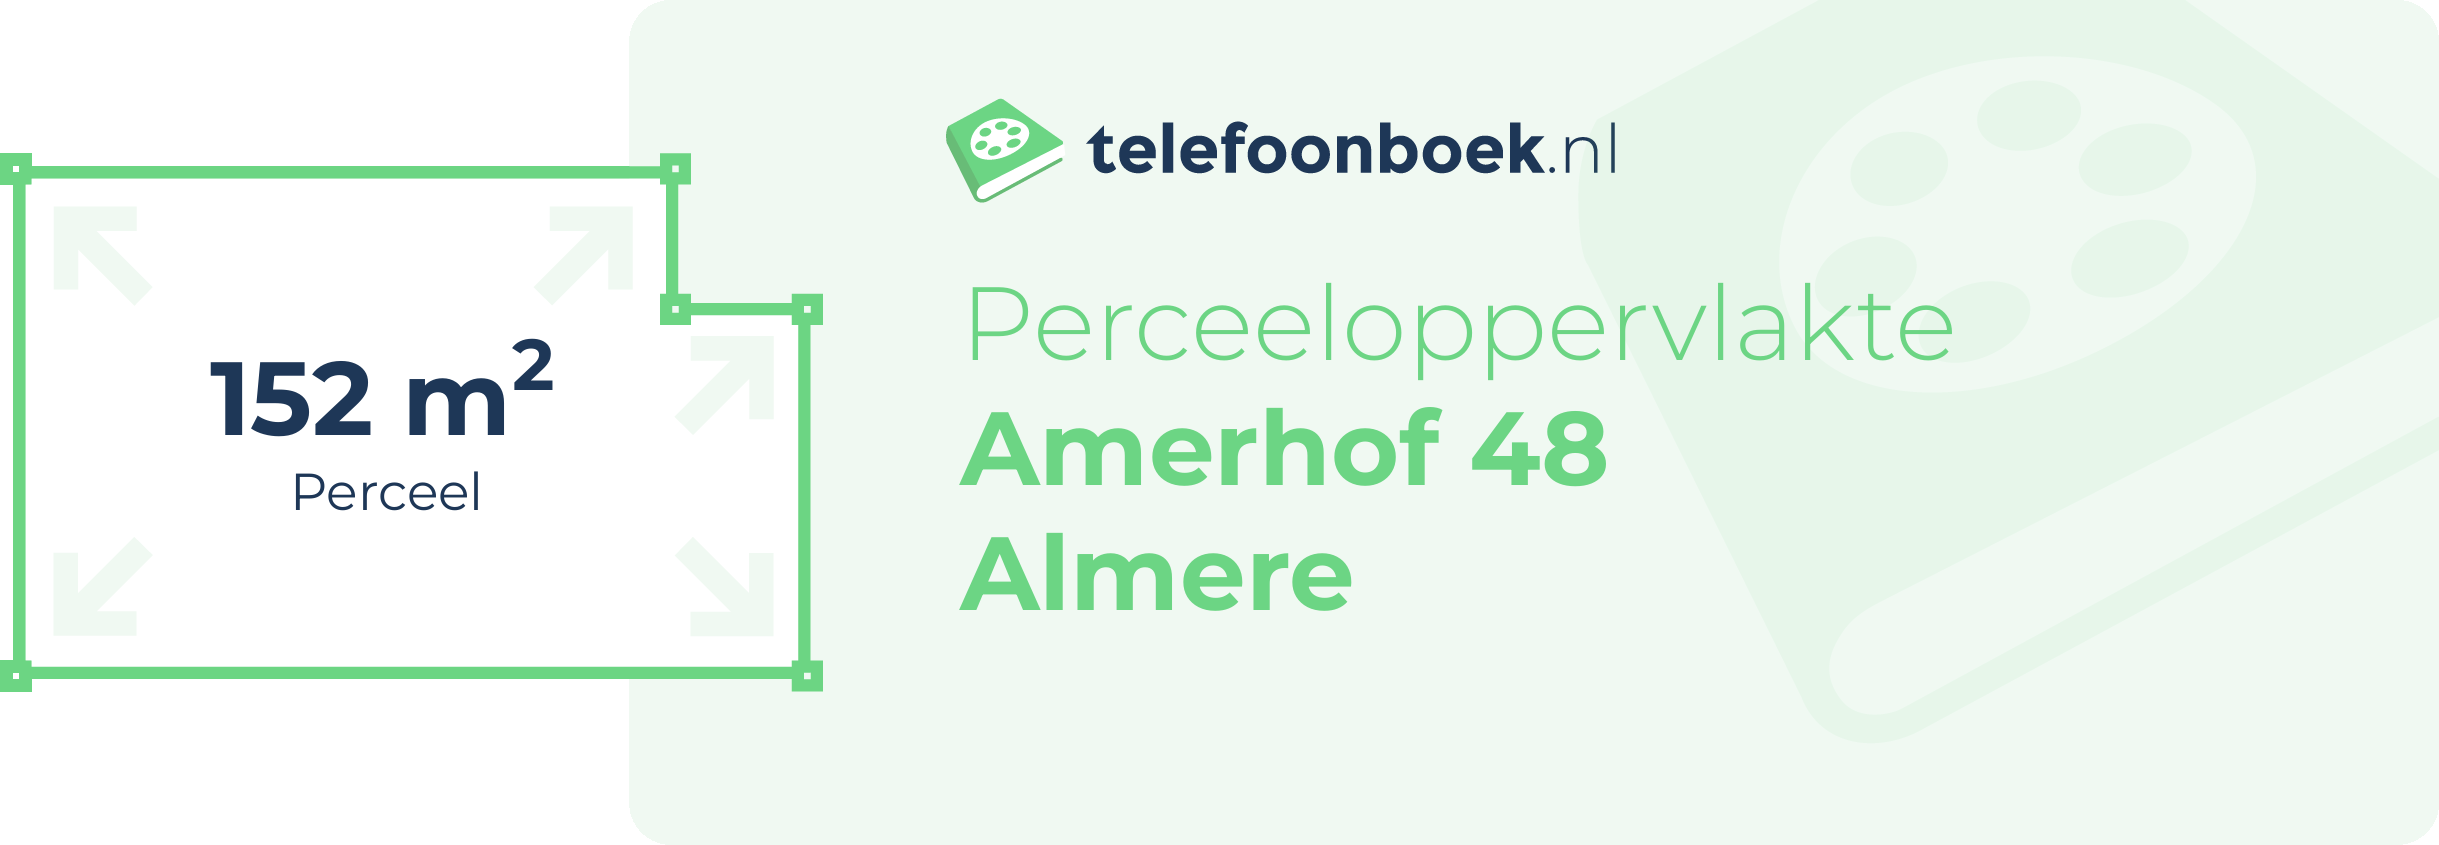 Perceeloppervlakte Amerhof 48 Almere